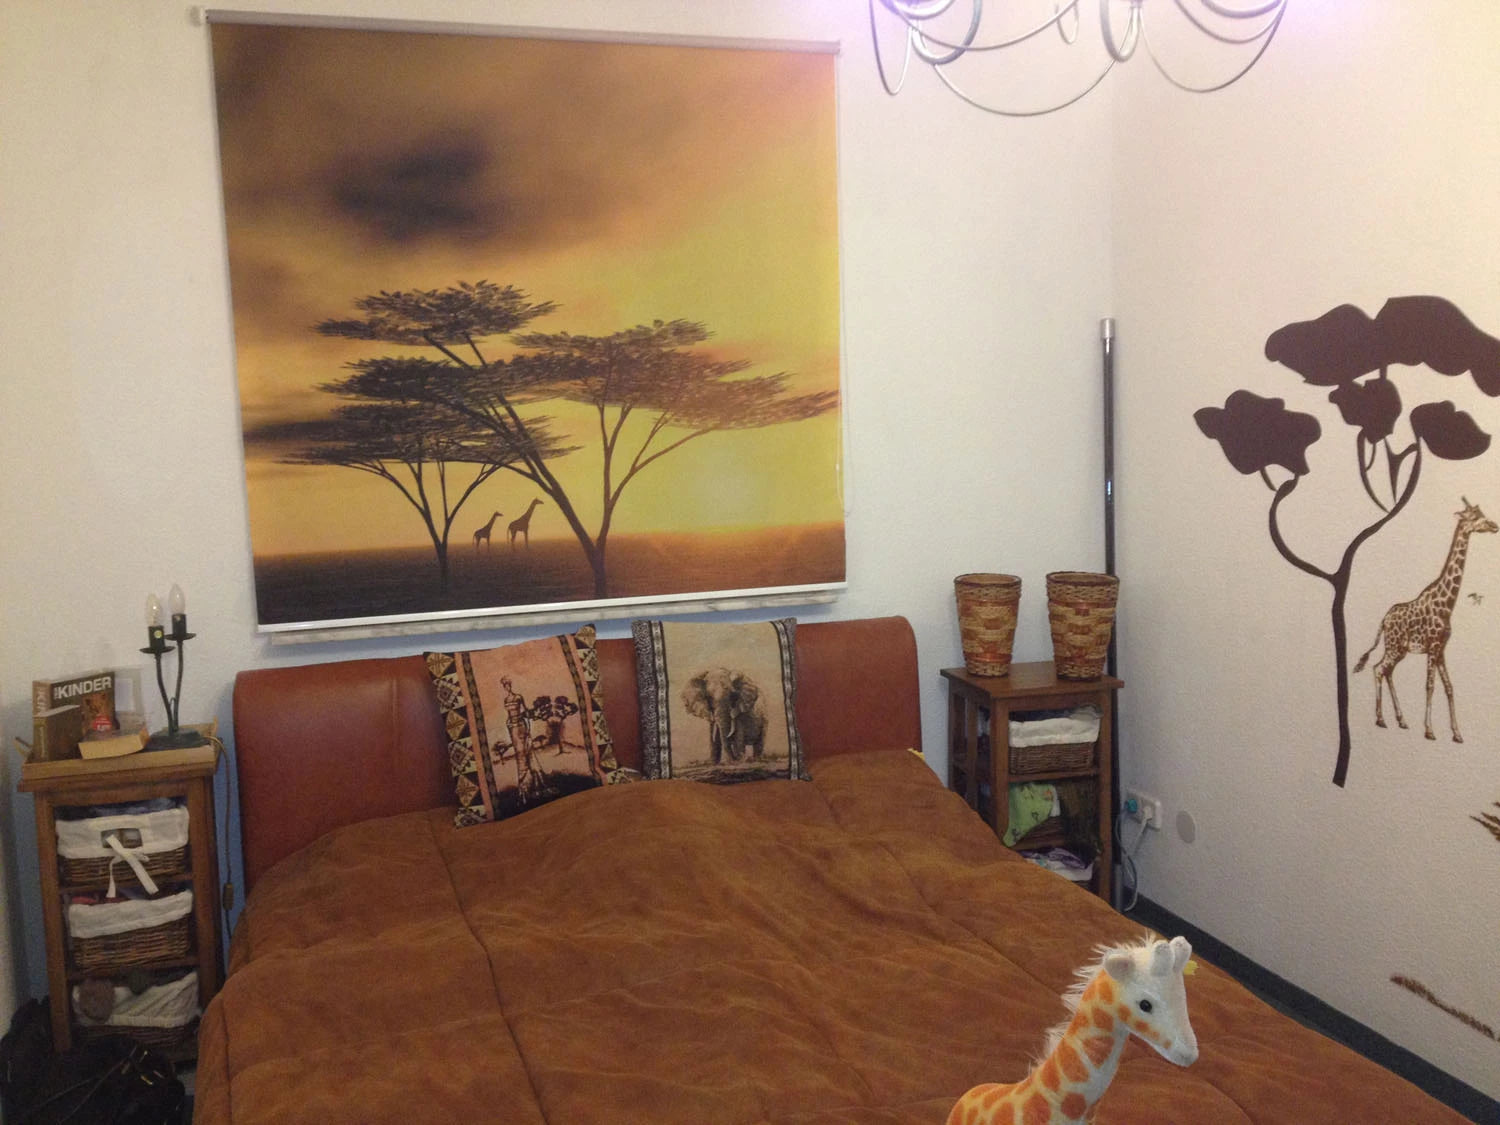 Motiv Afrika Giraffen als Foto-Rollo im afrikanischen Stil eingerichtetes Schlafzimmer